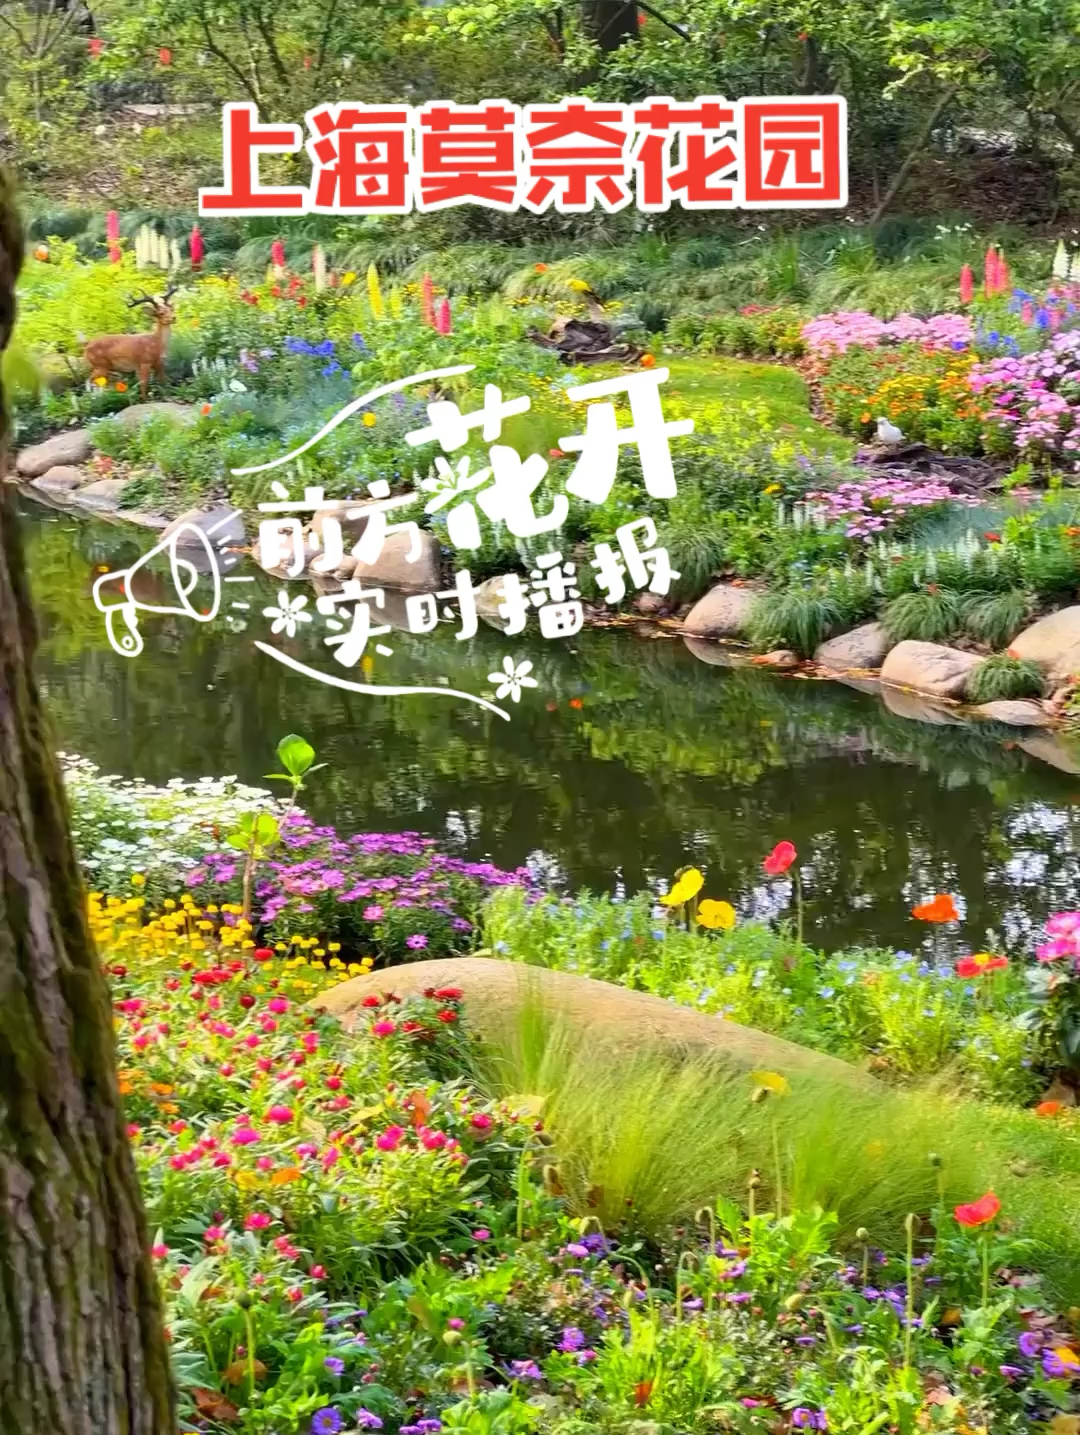 上海莫奈花园